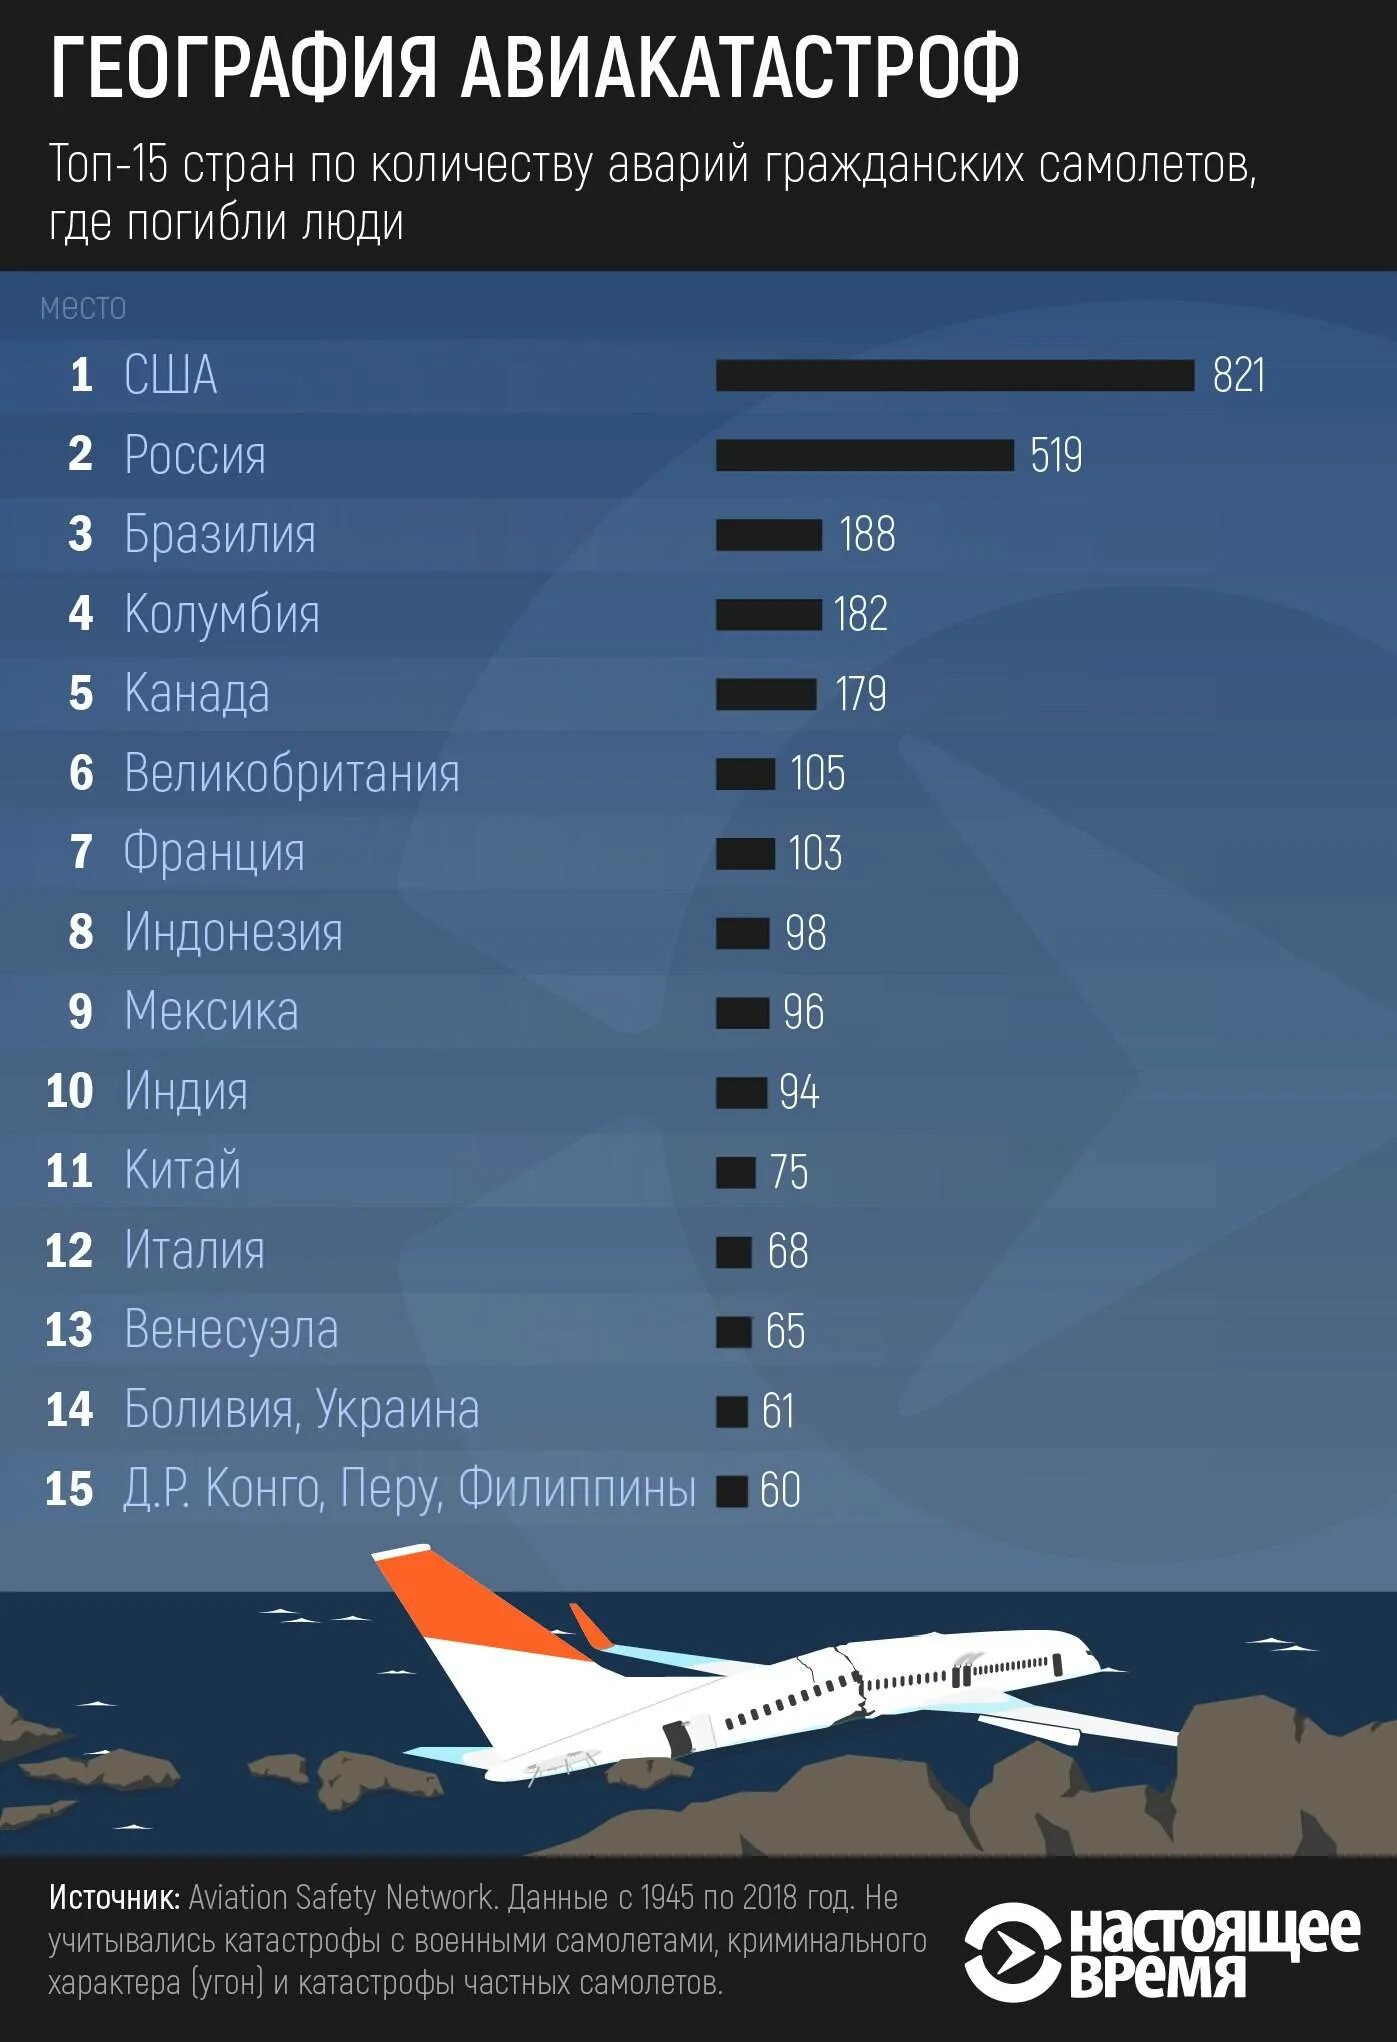 Сколько падали самолеты. Статистика падения самолетов. Количество самолетов по странам. Статистика авиакатастроф по годам. Статистика крушений самолетов.